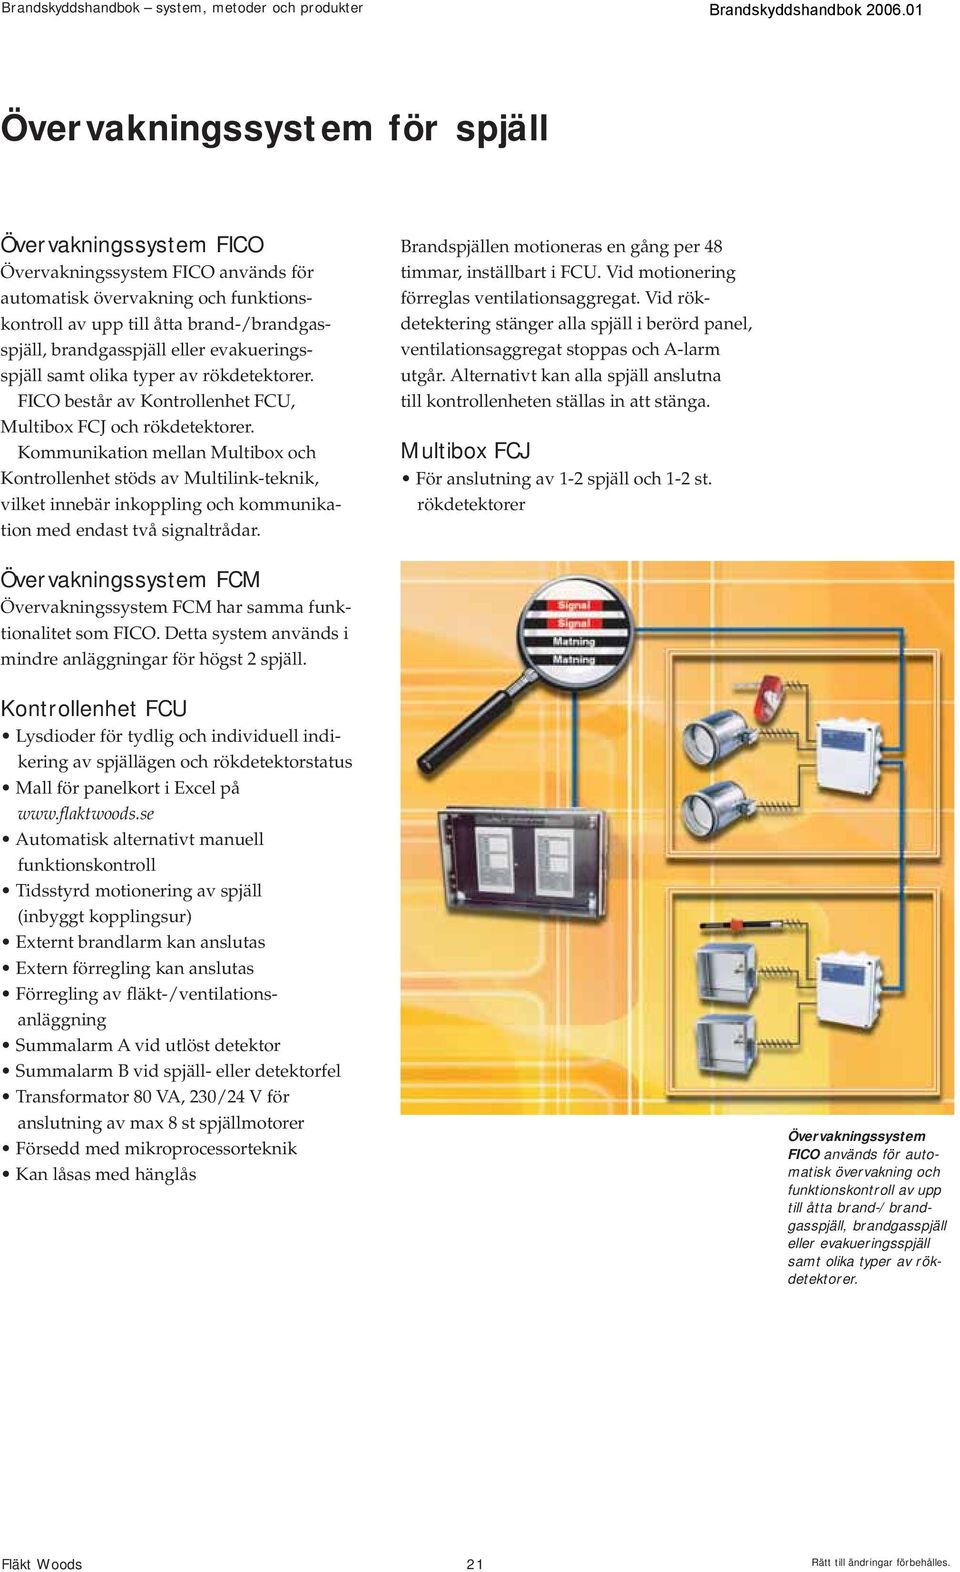 Kommunikation mellan Multibox och Kontrollenhet stöds av Multilink-teknik, vilket innebär inkoppling och kommunikation med endast två signaltrådar.